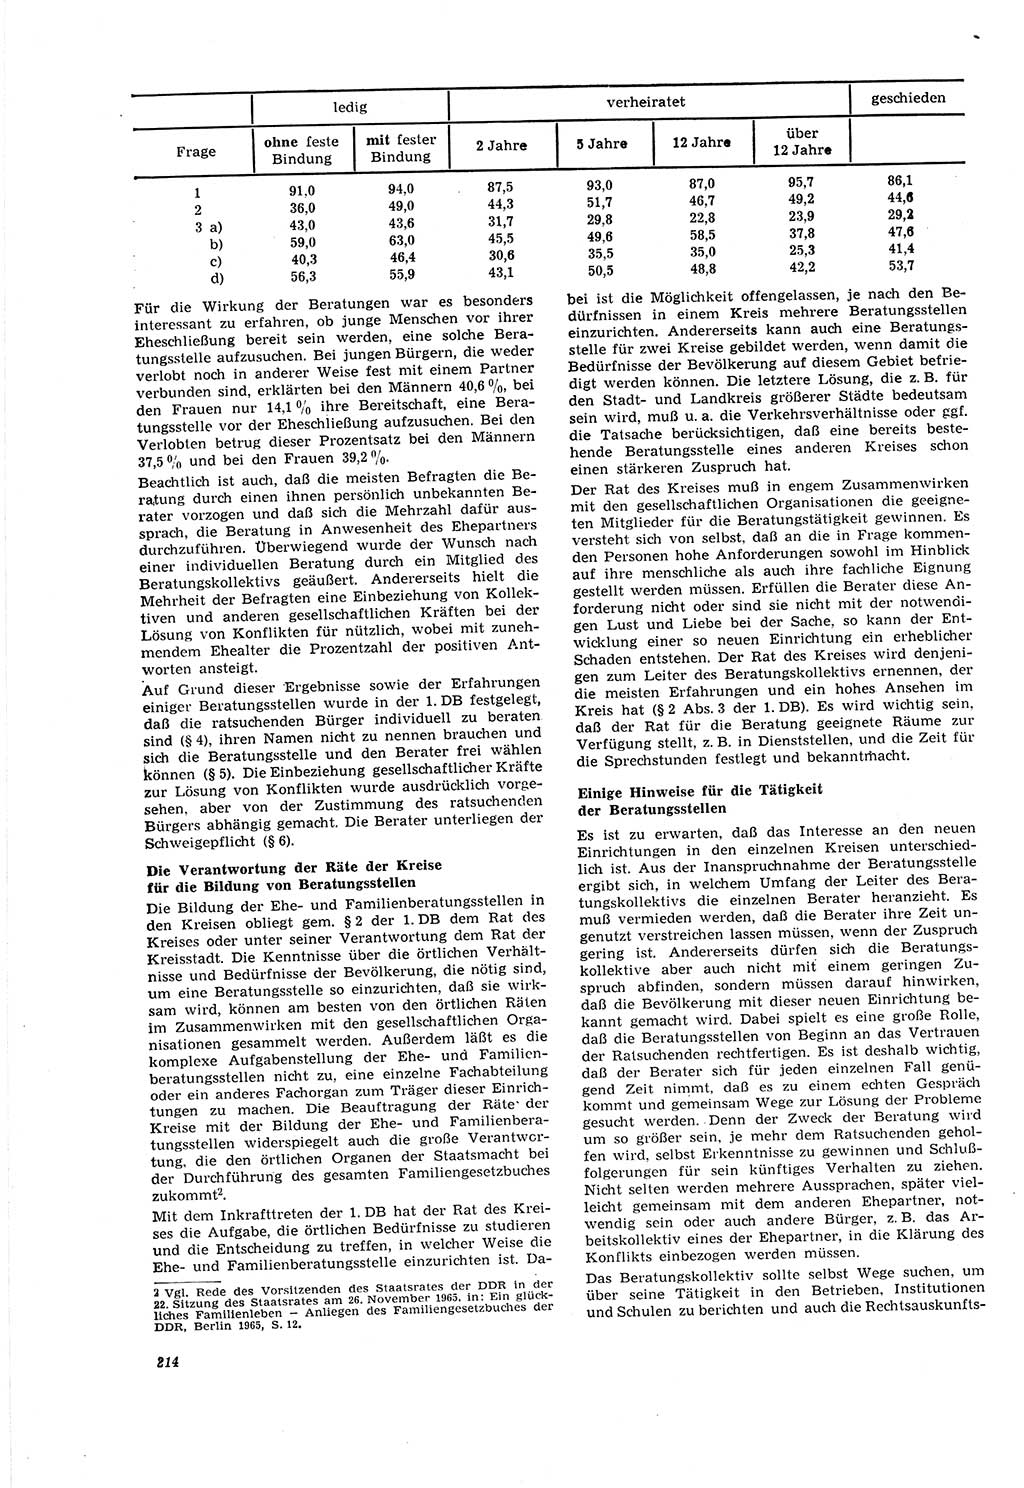 Neue Justiz (NJ), Zeitschrift für Recht und Rechtswissenschaft [Deutsche Demokratische Republik (DDR)], 20. Jahrgang 1966, Seite 214 (NJ DDR 1966, S. 214)